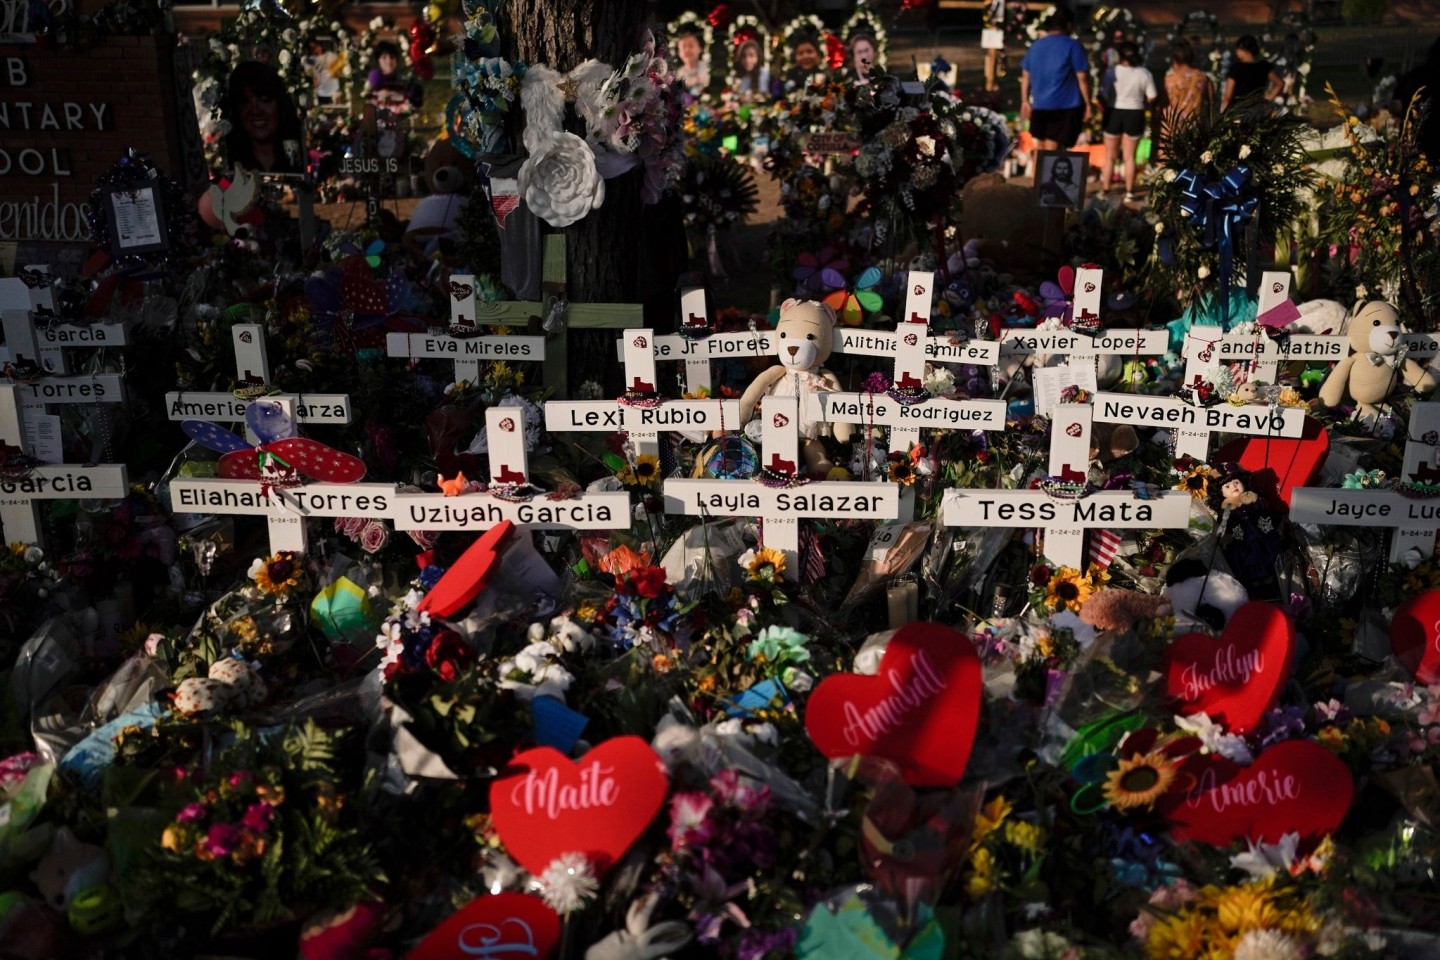 Kreuze mit den Namen der Opfer sowie Blumen, Luftballons und Plüschtiere bilden eine Gedenkstätte zu Ehren der Opfer nach dem Schulmassaker.